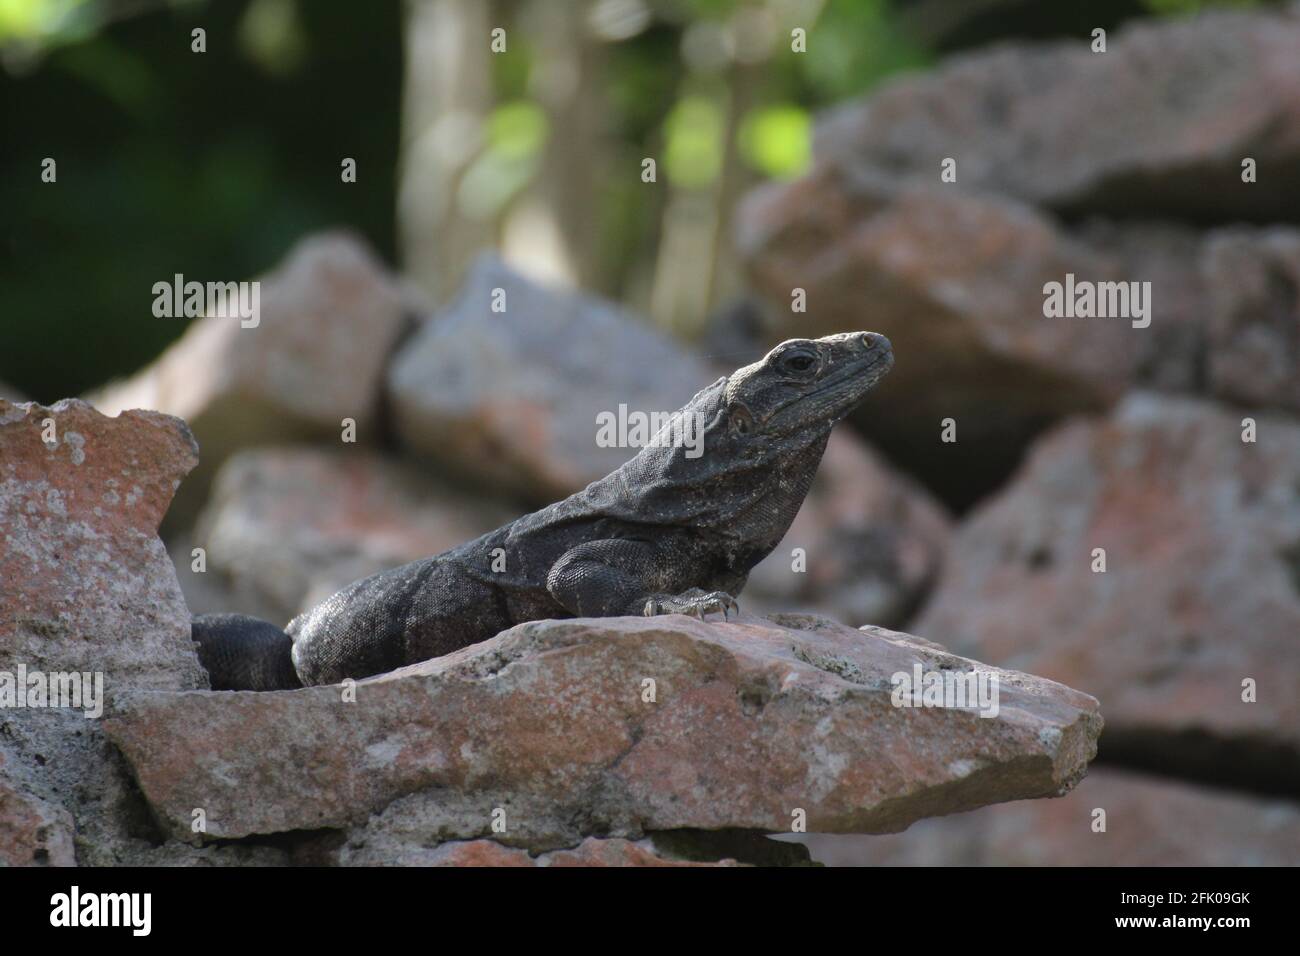 small, narrow Lizard Stock Photo